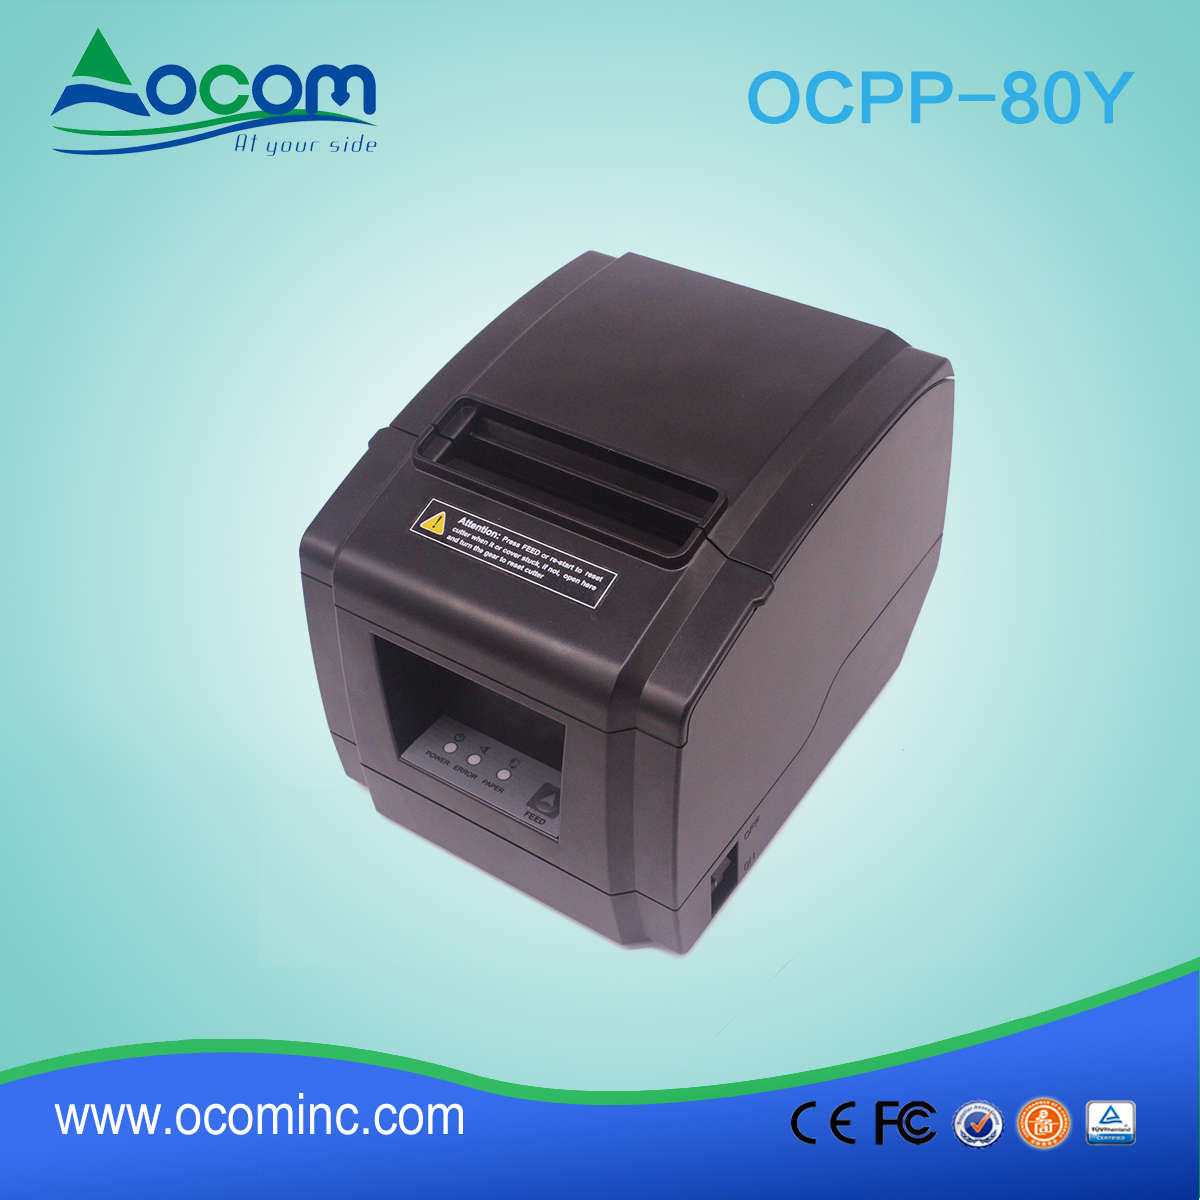 Nieuwe Model ocpp-80y 80 mm thermische ontvangst Printer met de Snijder van de Auto